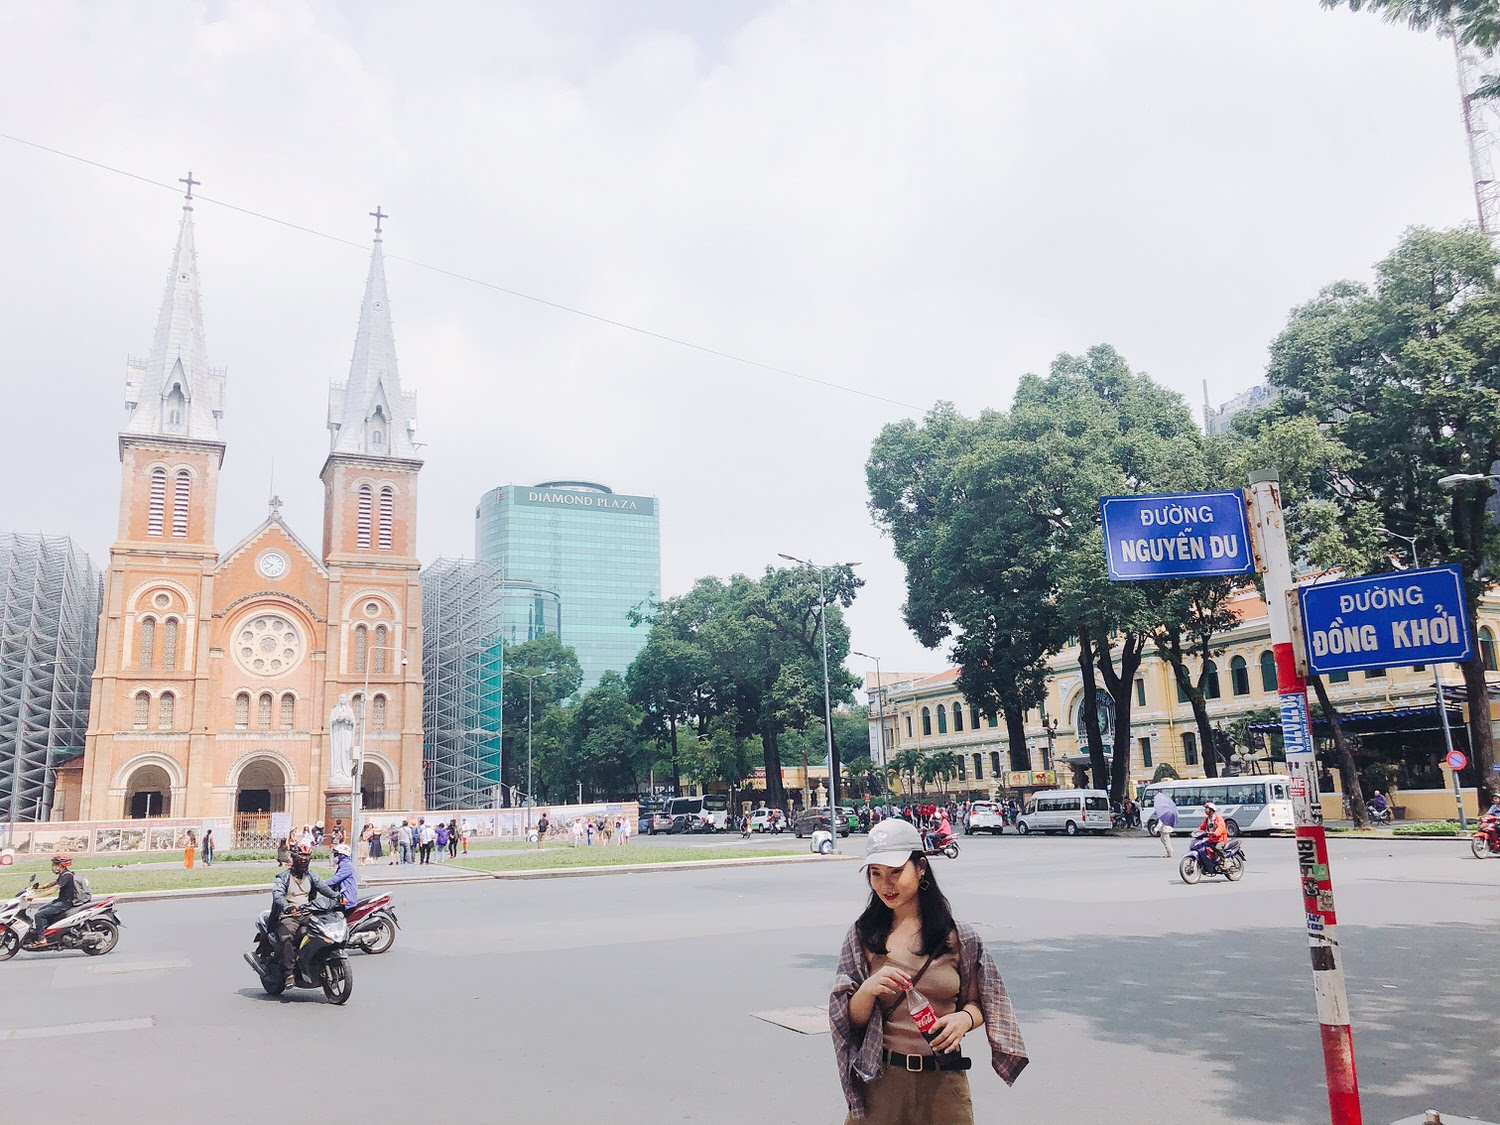 Vietnam 胡志明市自由行 
Bưu điện trung tâm Sài Gòn 中央郵局
Nhà thờ chính tòa Đức Bà Sài Gòn 紅教堂